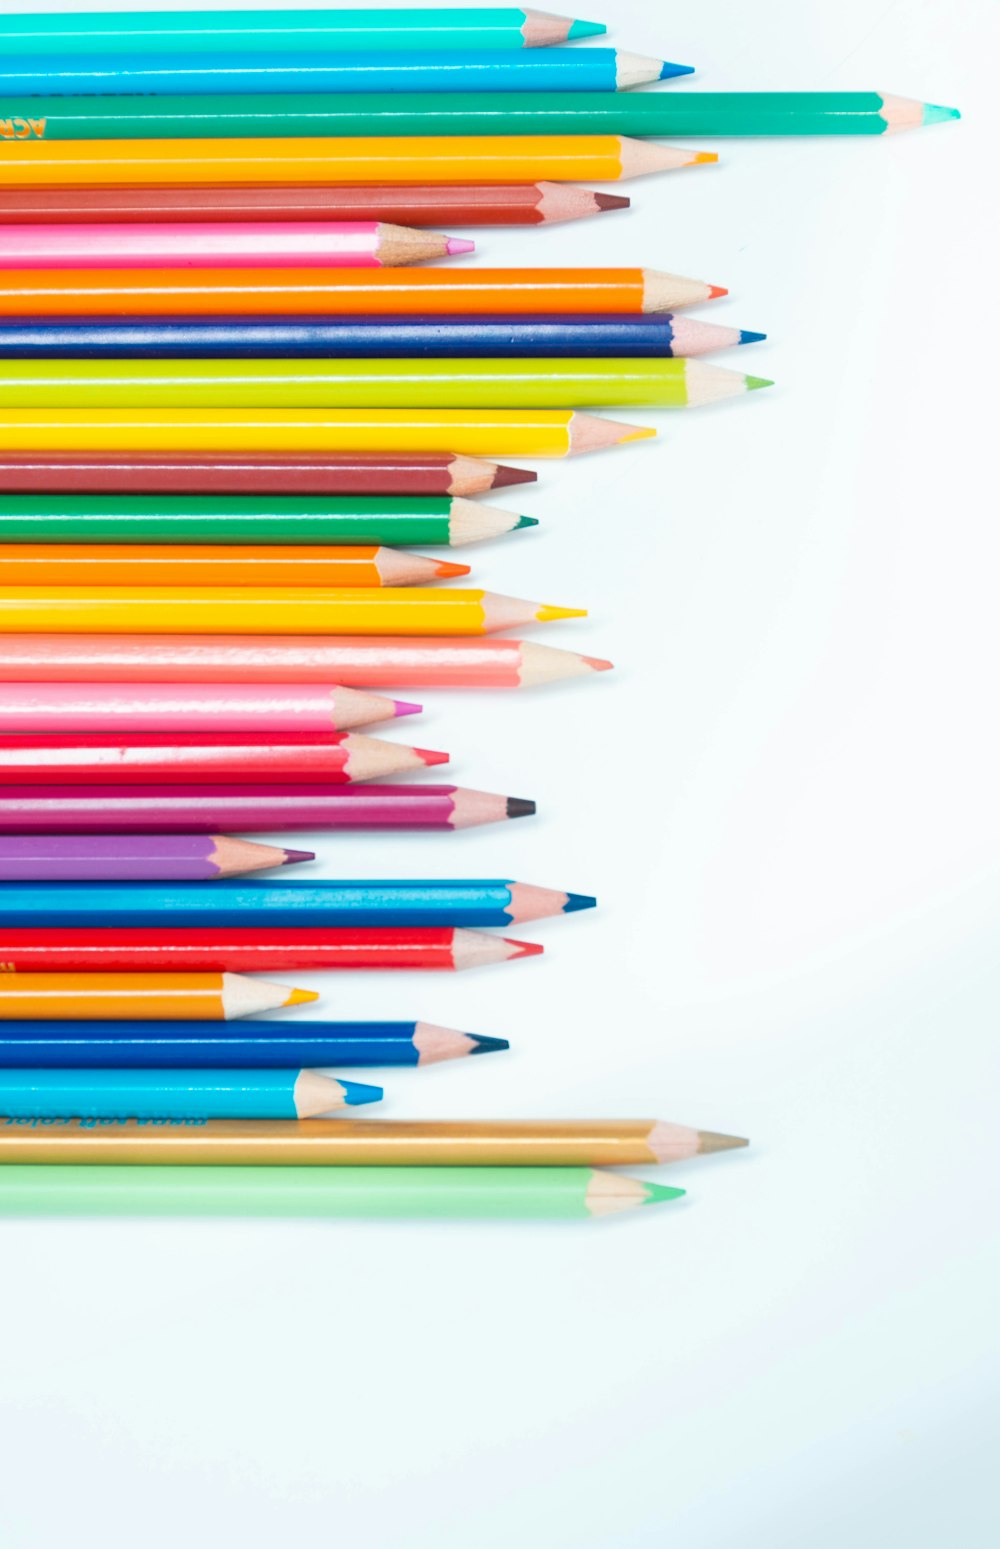 lápices de colores multicolores sobre superficie blanca